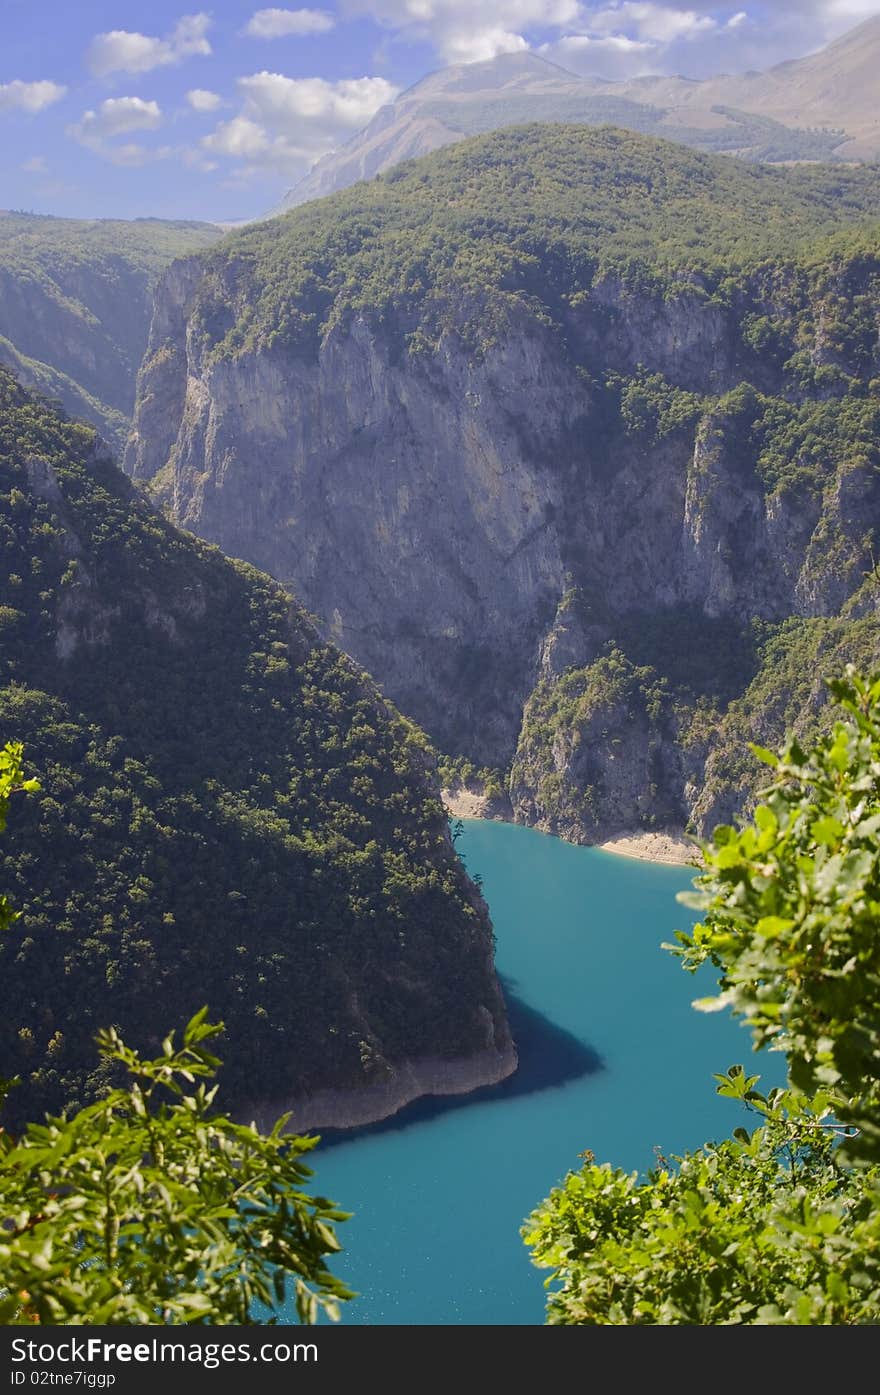 Blue lake in mountains, Pivsko Lake in Montenegro